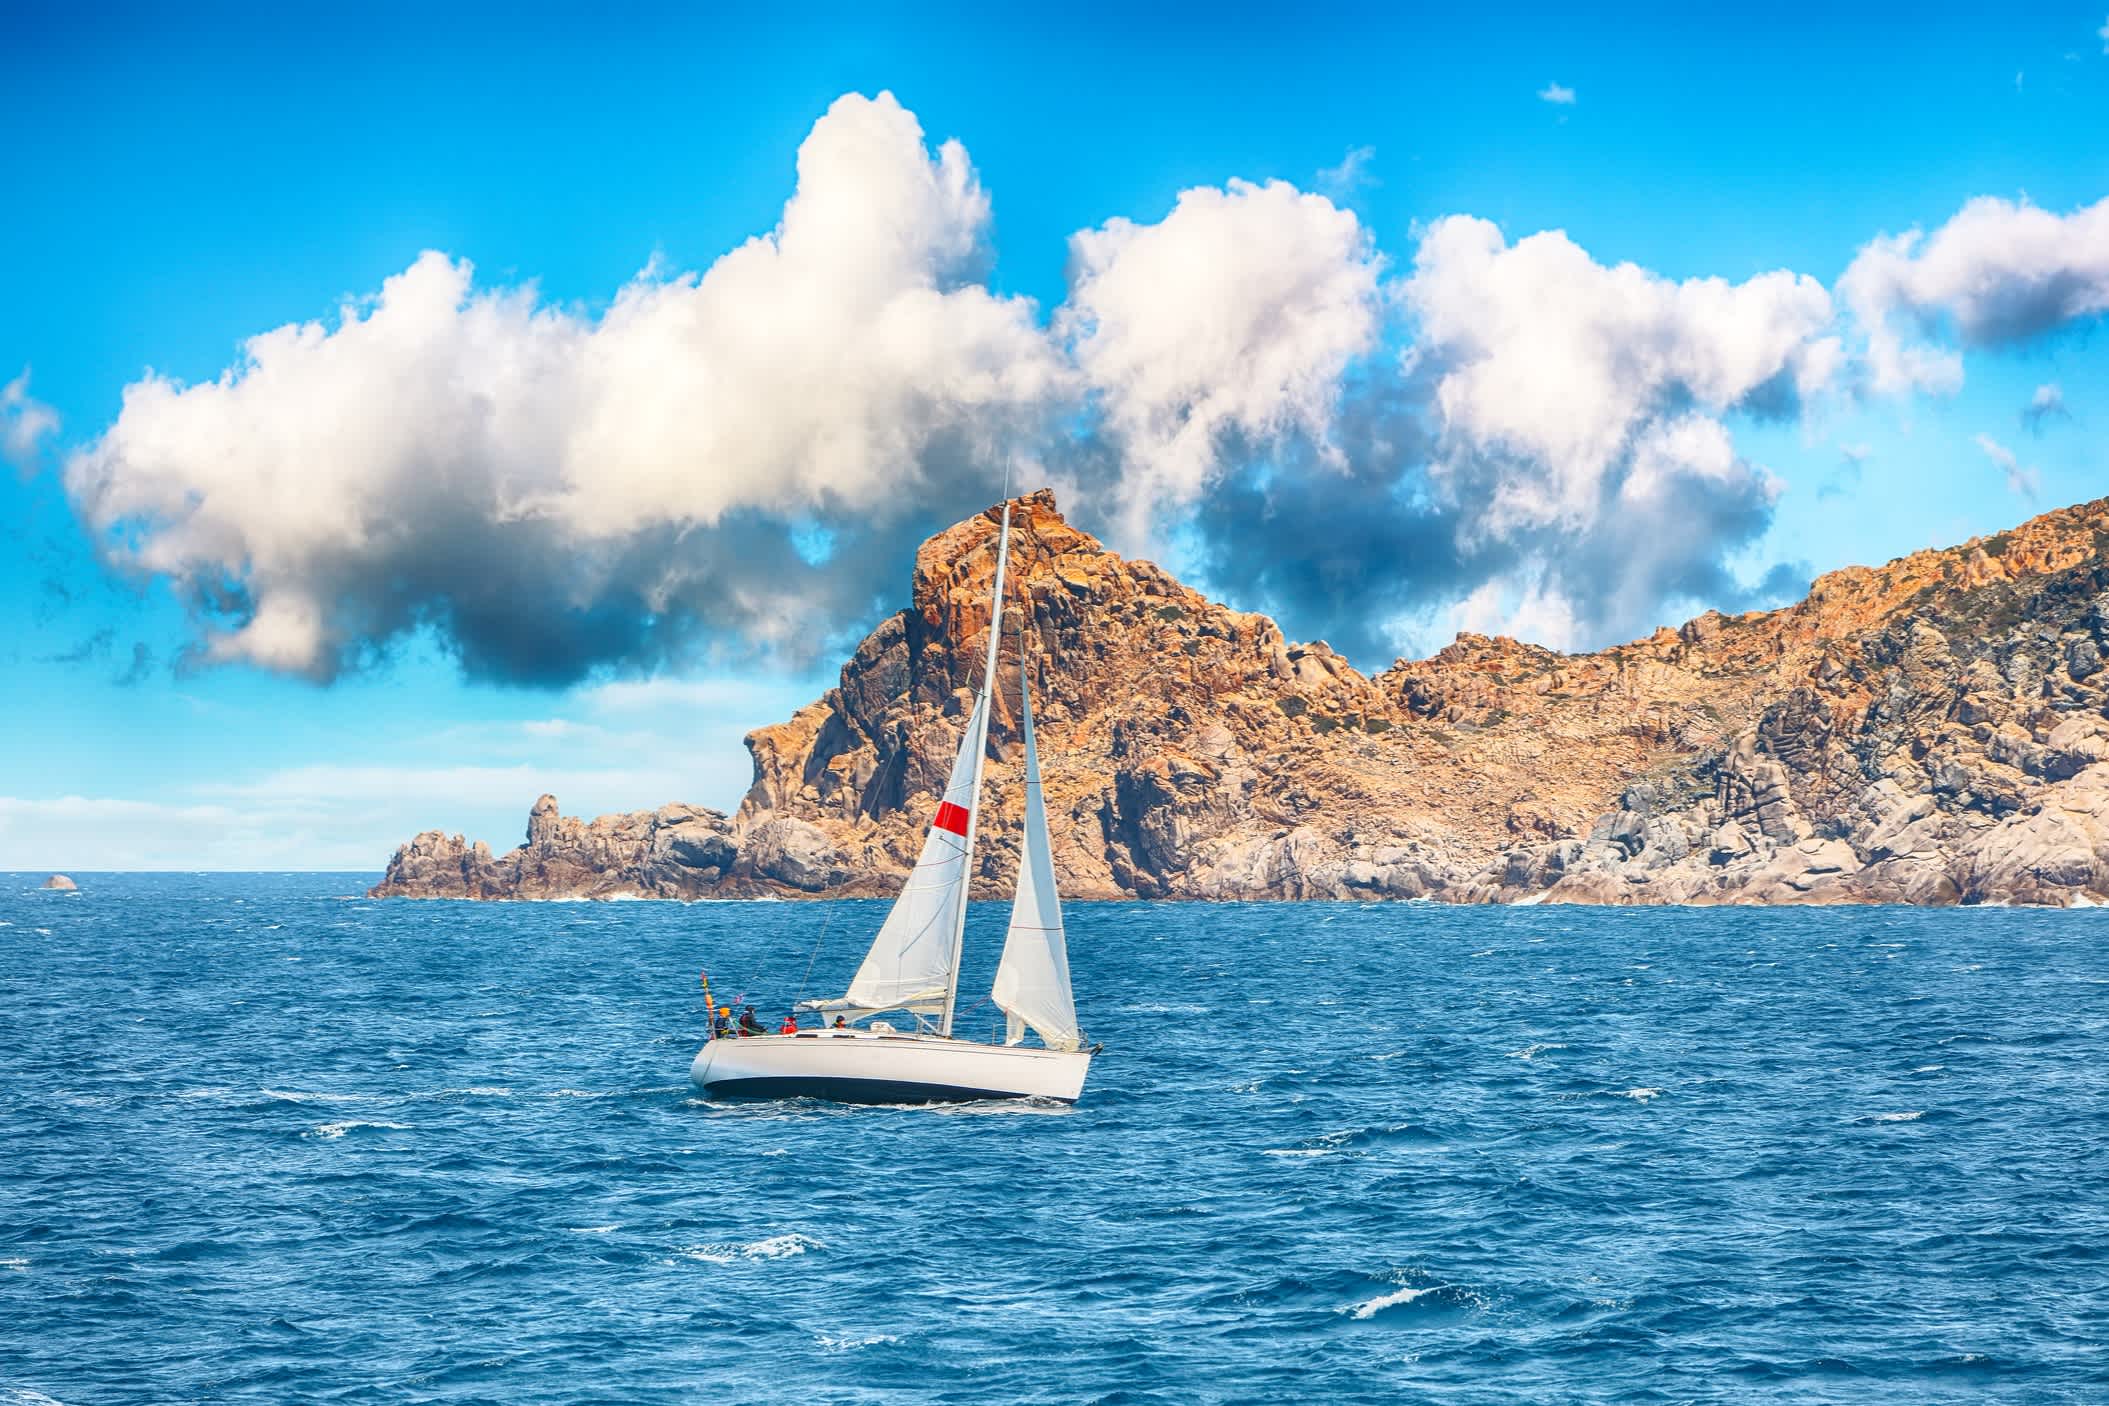 Das Segelboot in der Nähe der Klippen von Santa Teresa Gallura, Sardinien, Italien.

